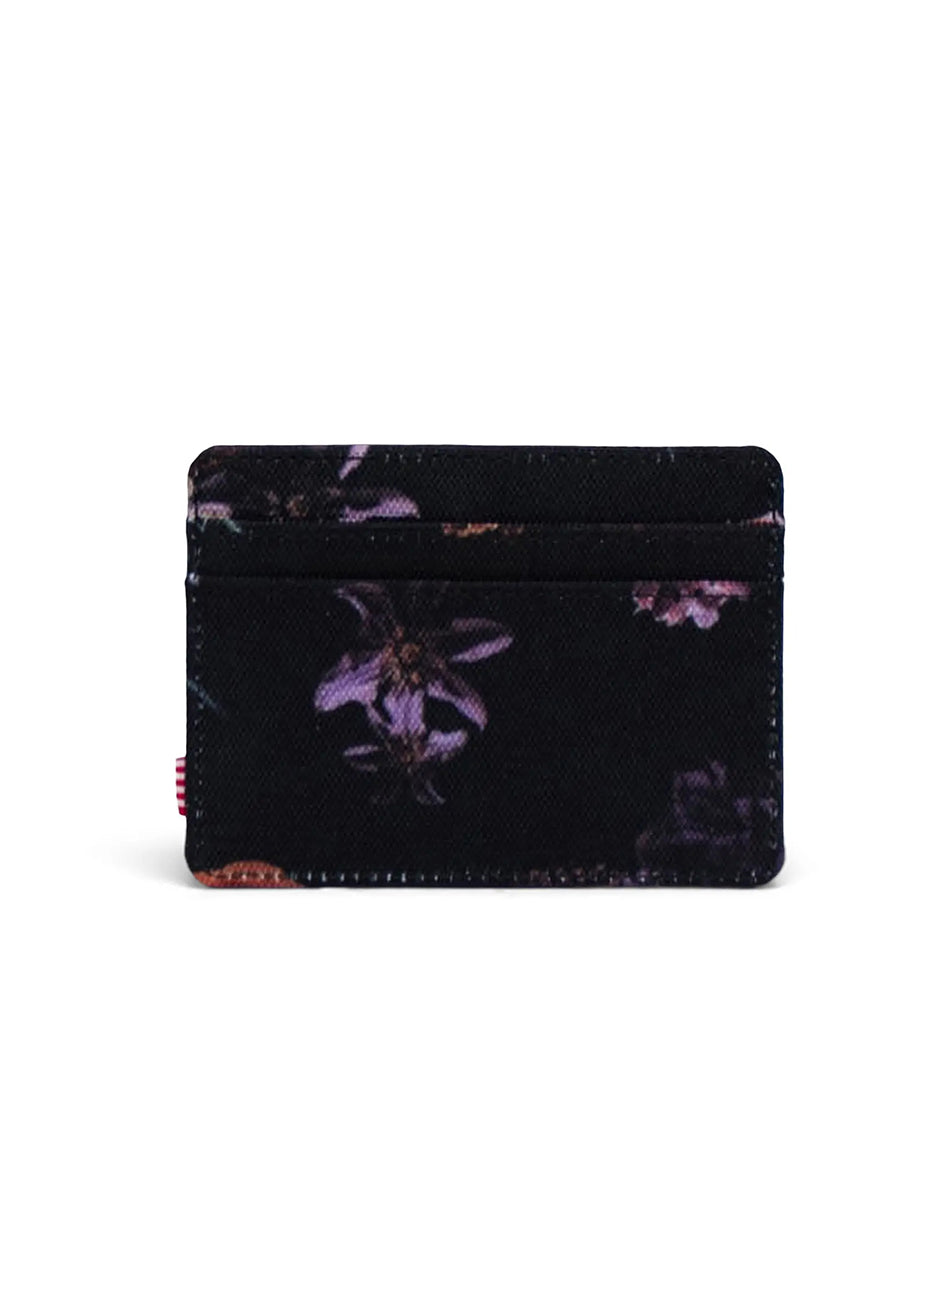 Charlie Cardholder Wallet - Floral Revival